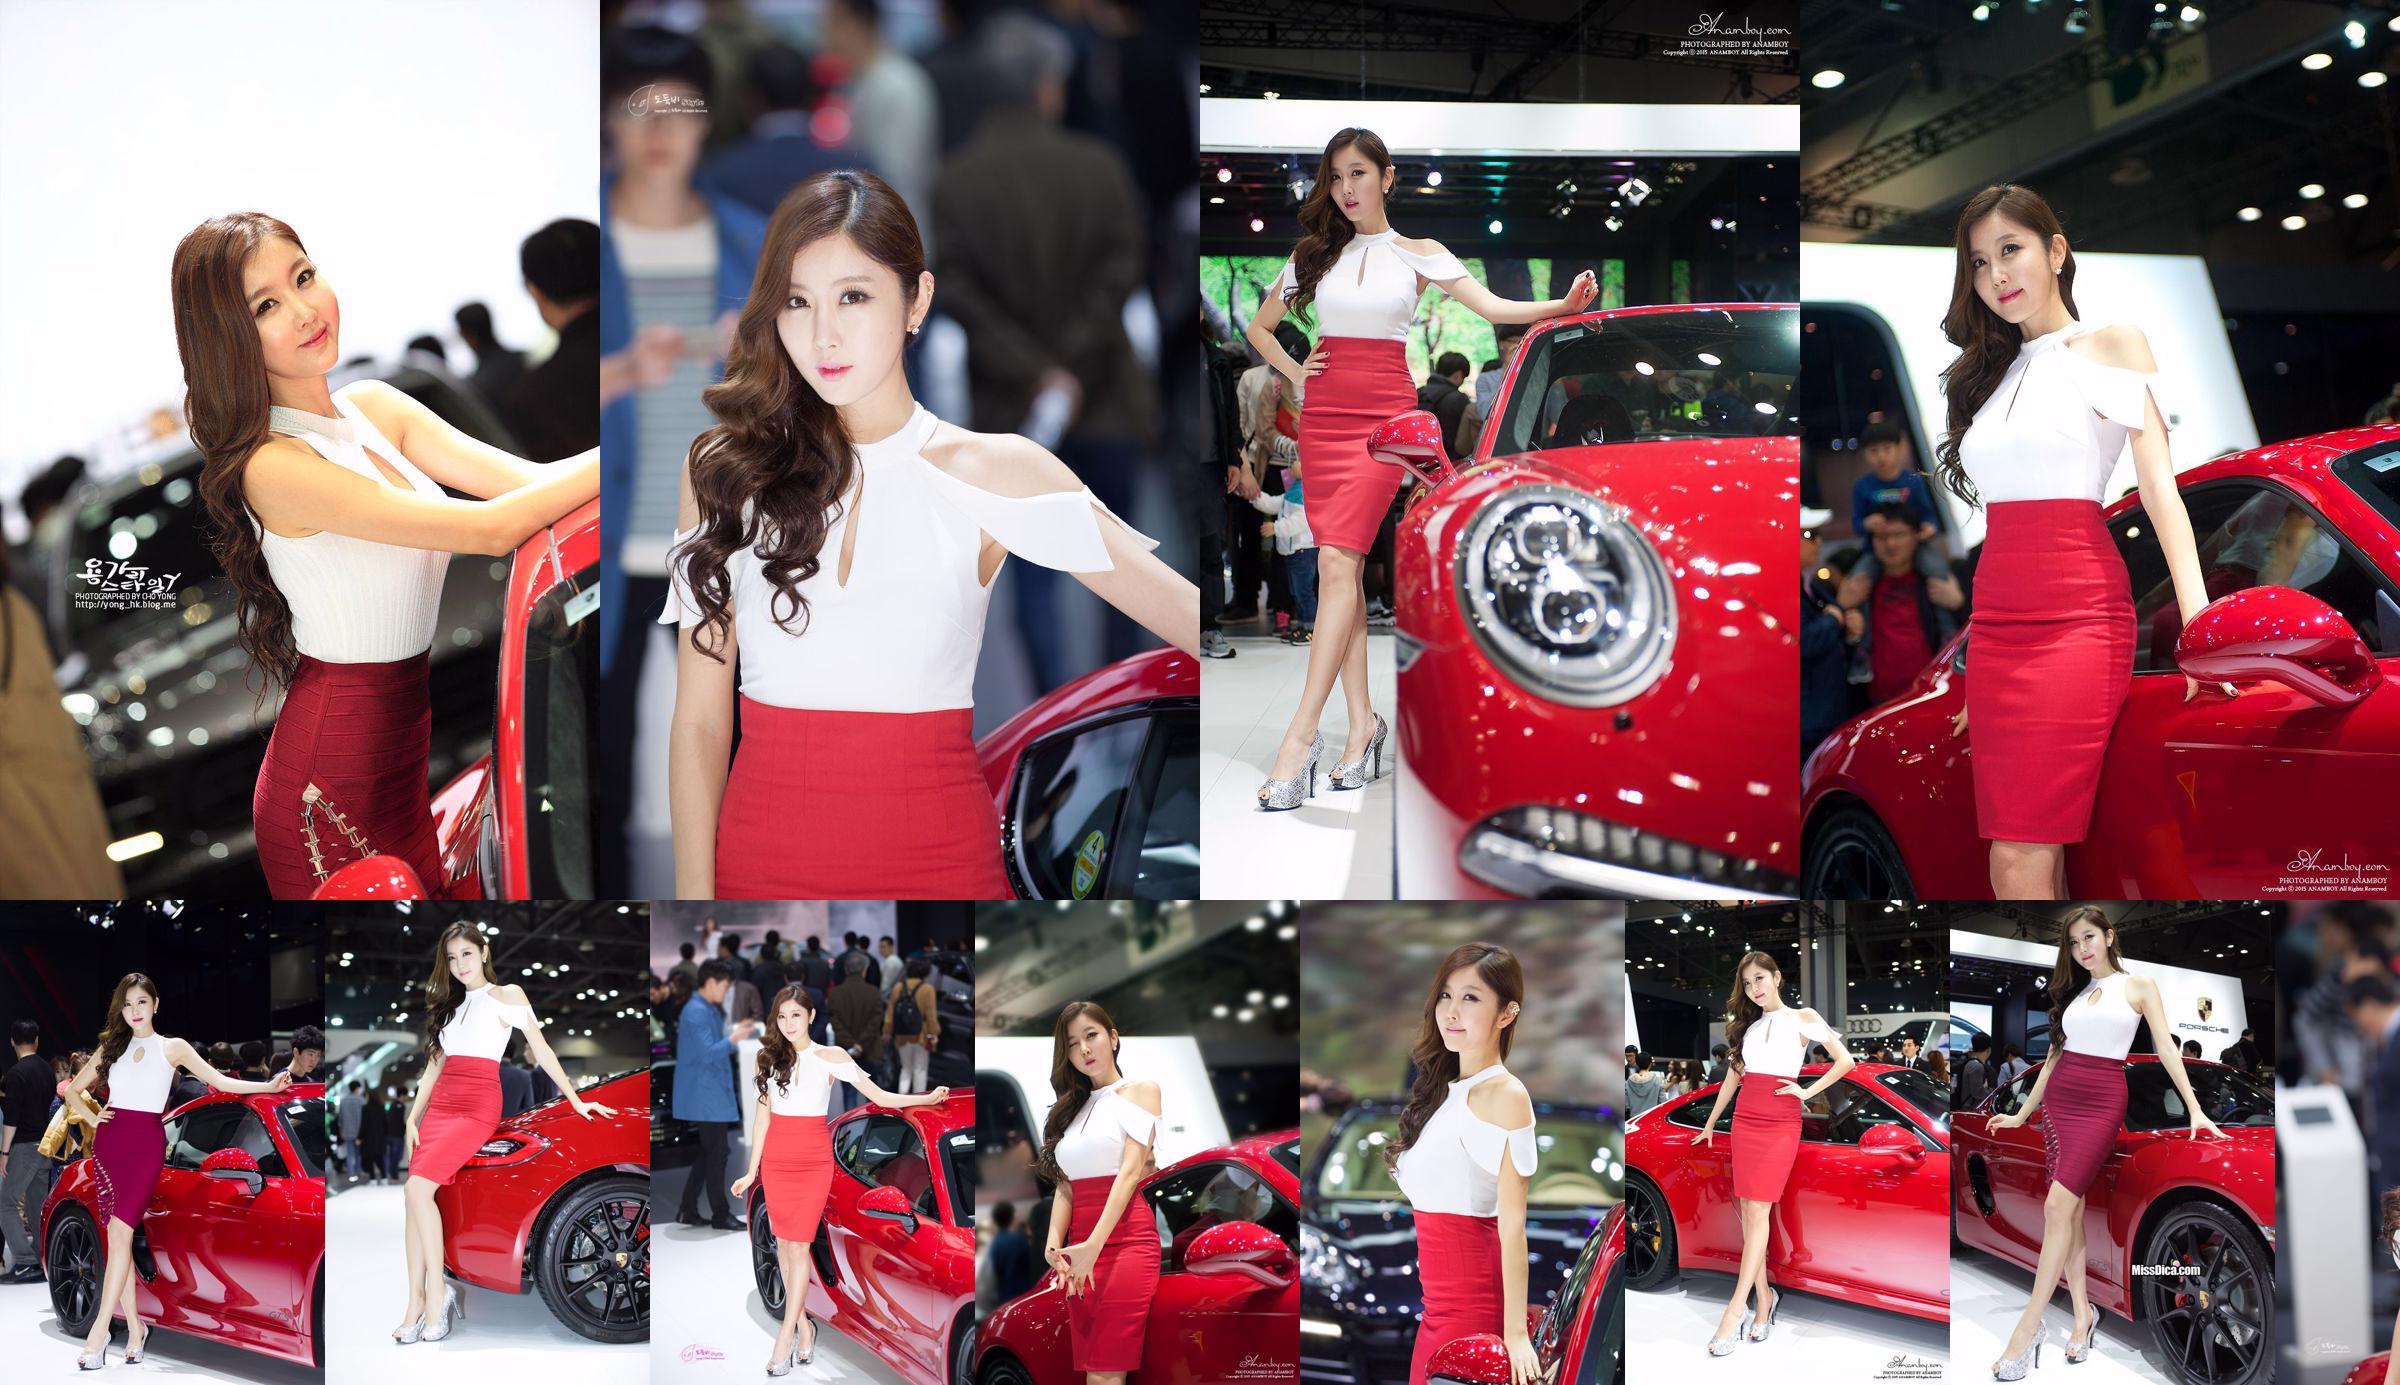 Bộ sưu tập ảnh của Người mẫu ô tô Hàn Quốc Cui Xingya / "Loạt váy đỏ tại triển lãm ô tô" của Cui Xinger No.27019a Trang 1